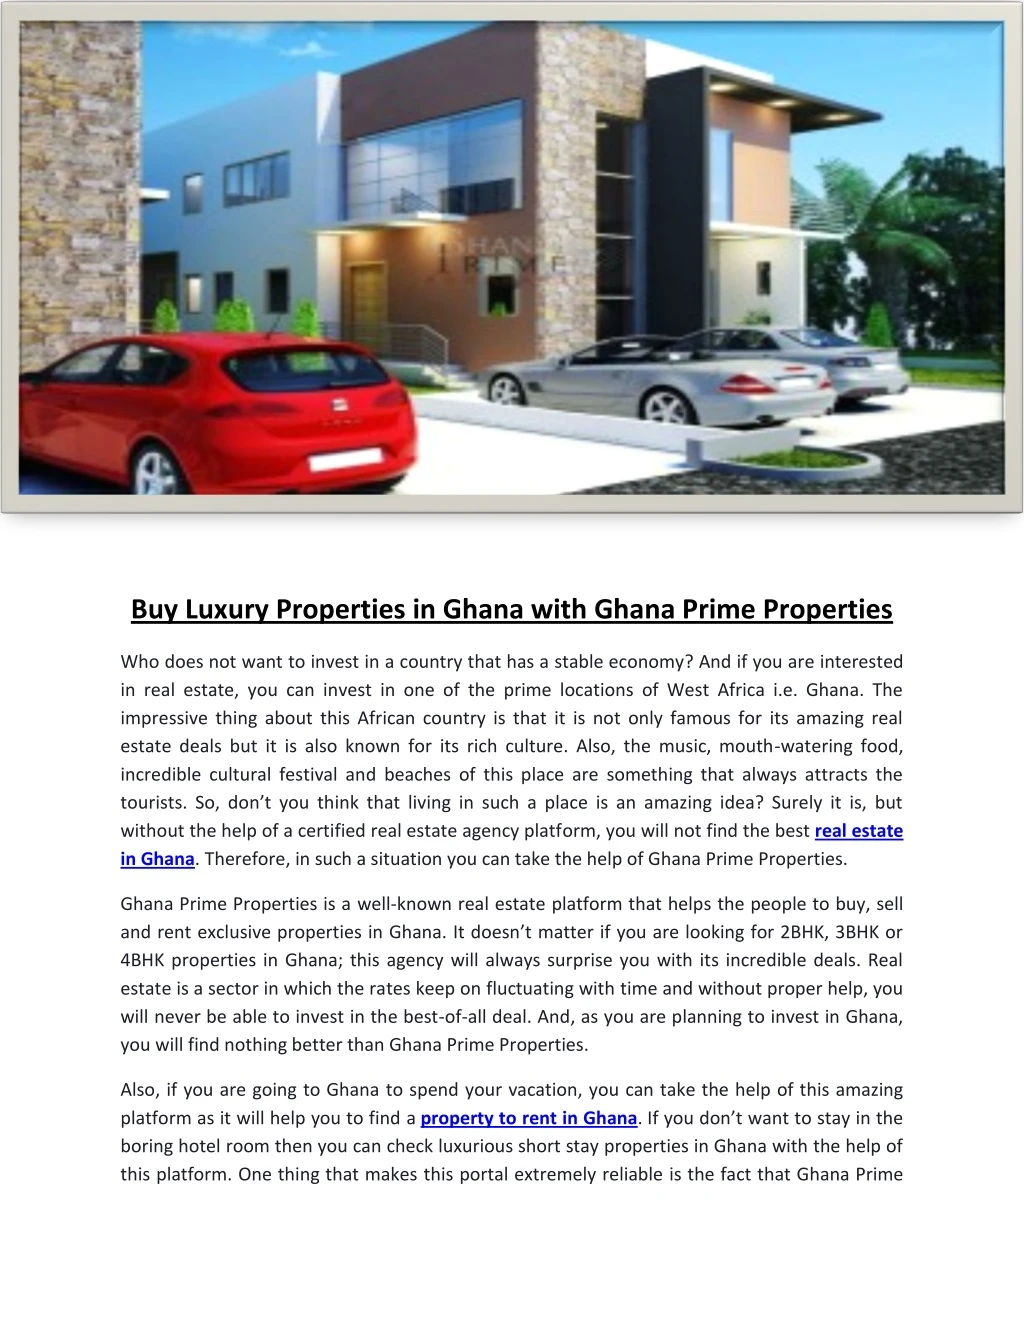 buy luxury properties in ghana with ghana prime